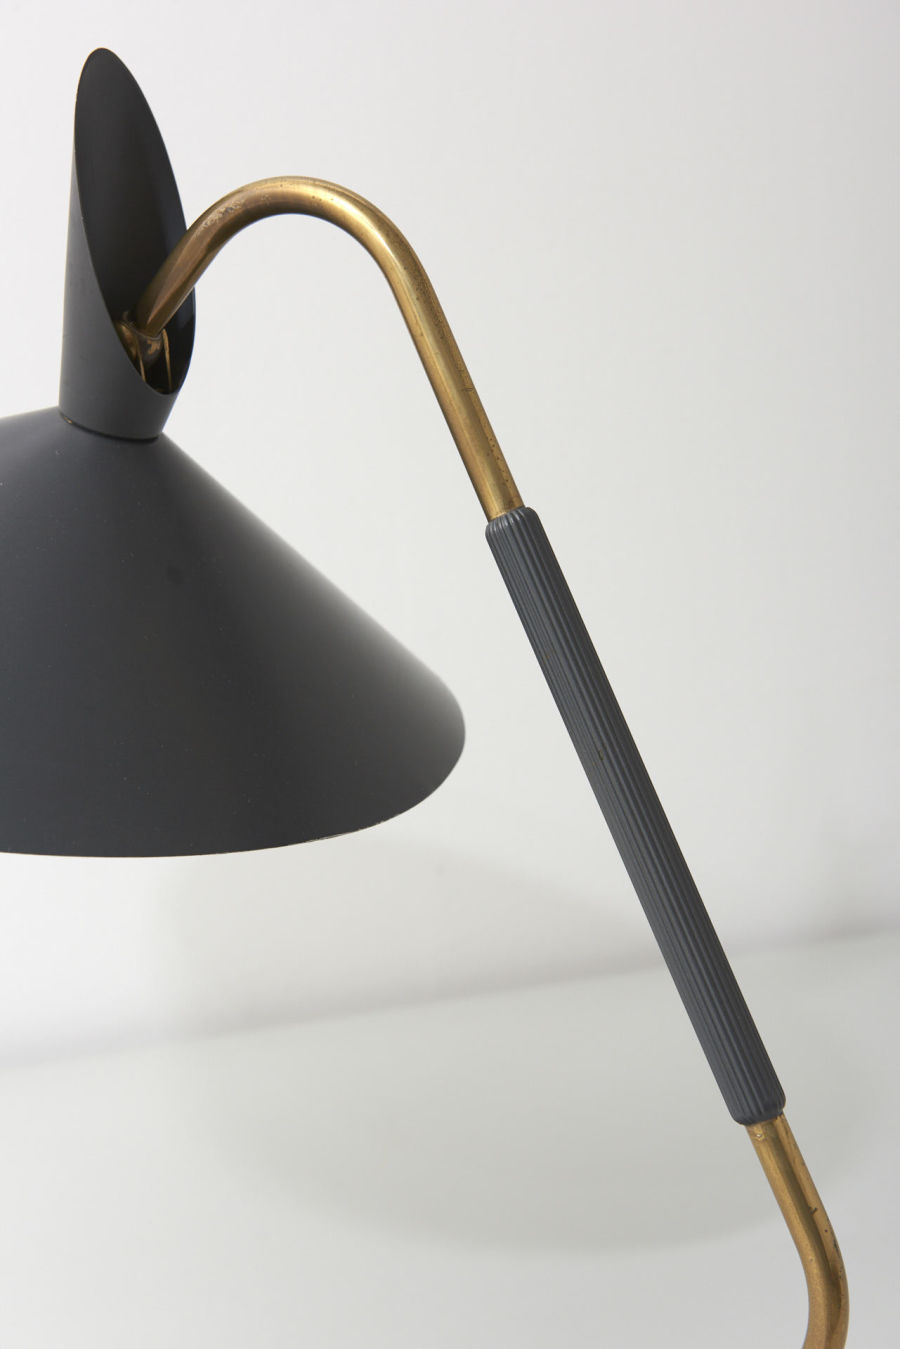 modestfurniture-vintage-2010-desk-lamp-grey-shade30